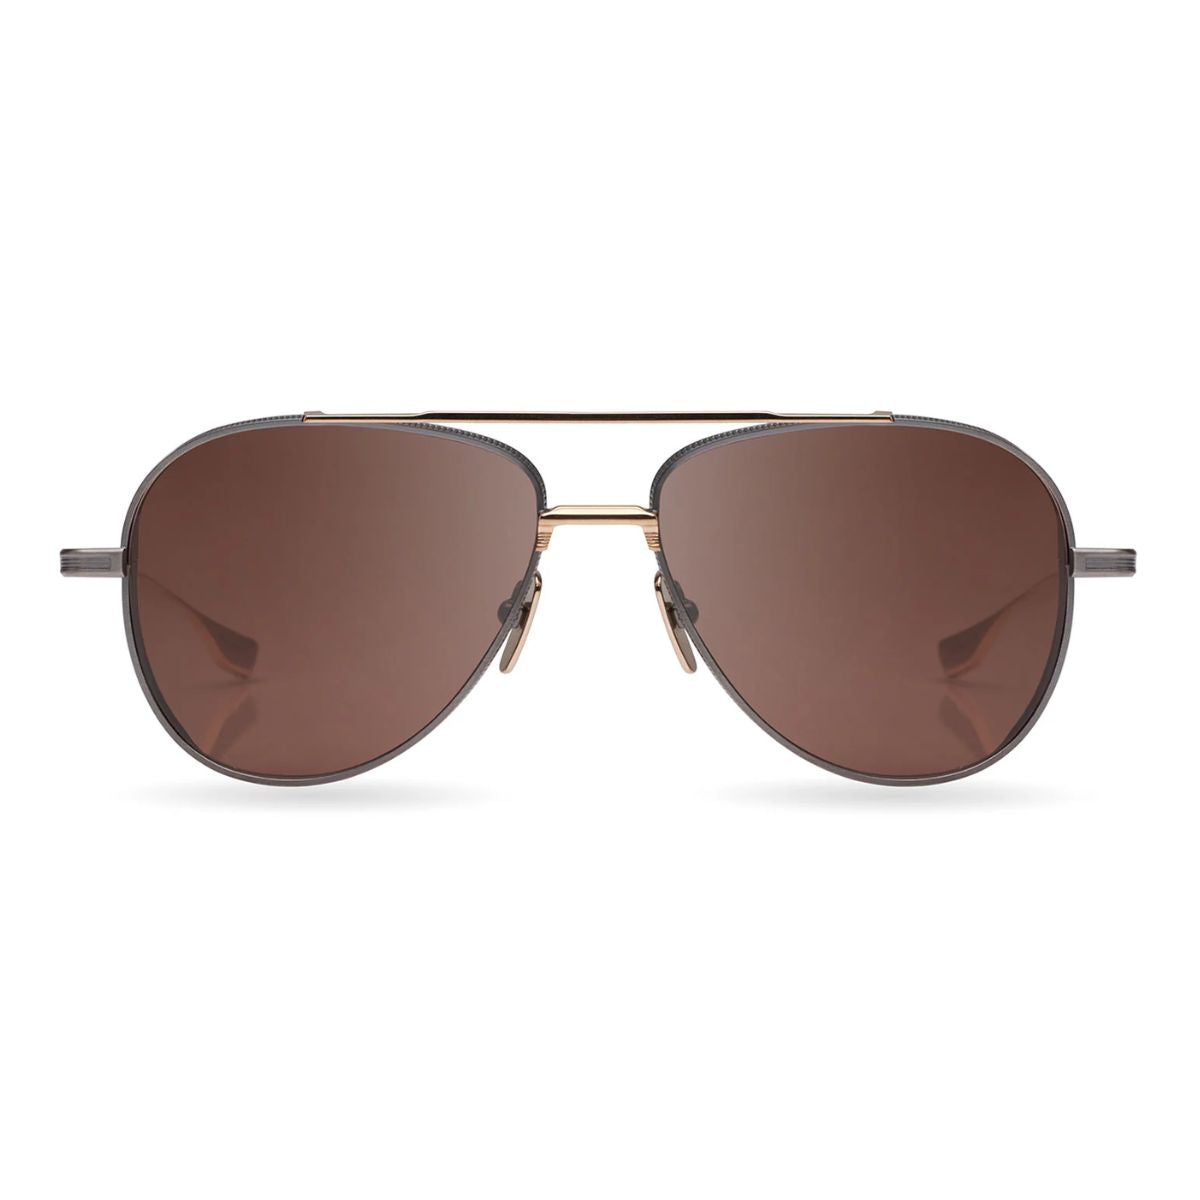 "Stylish Aviator Sunglasses For Both Men's & Women's At Optorium"